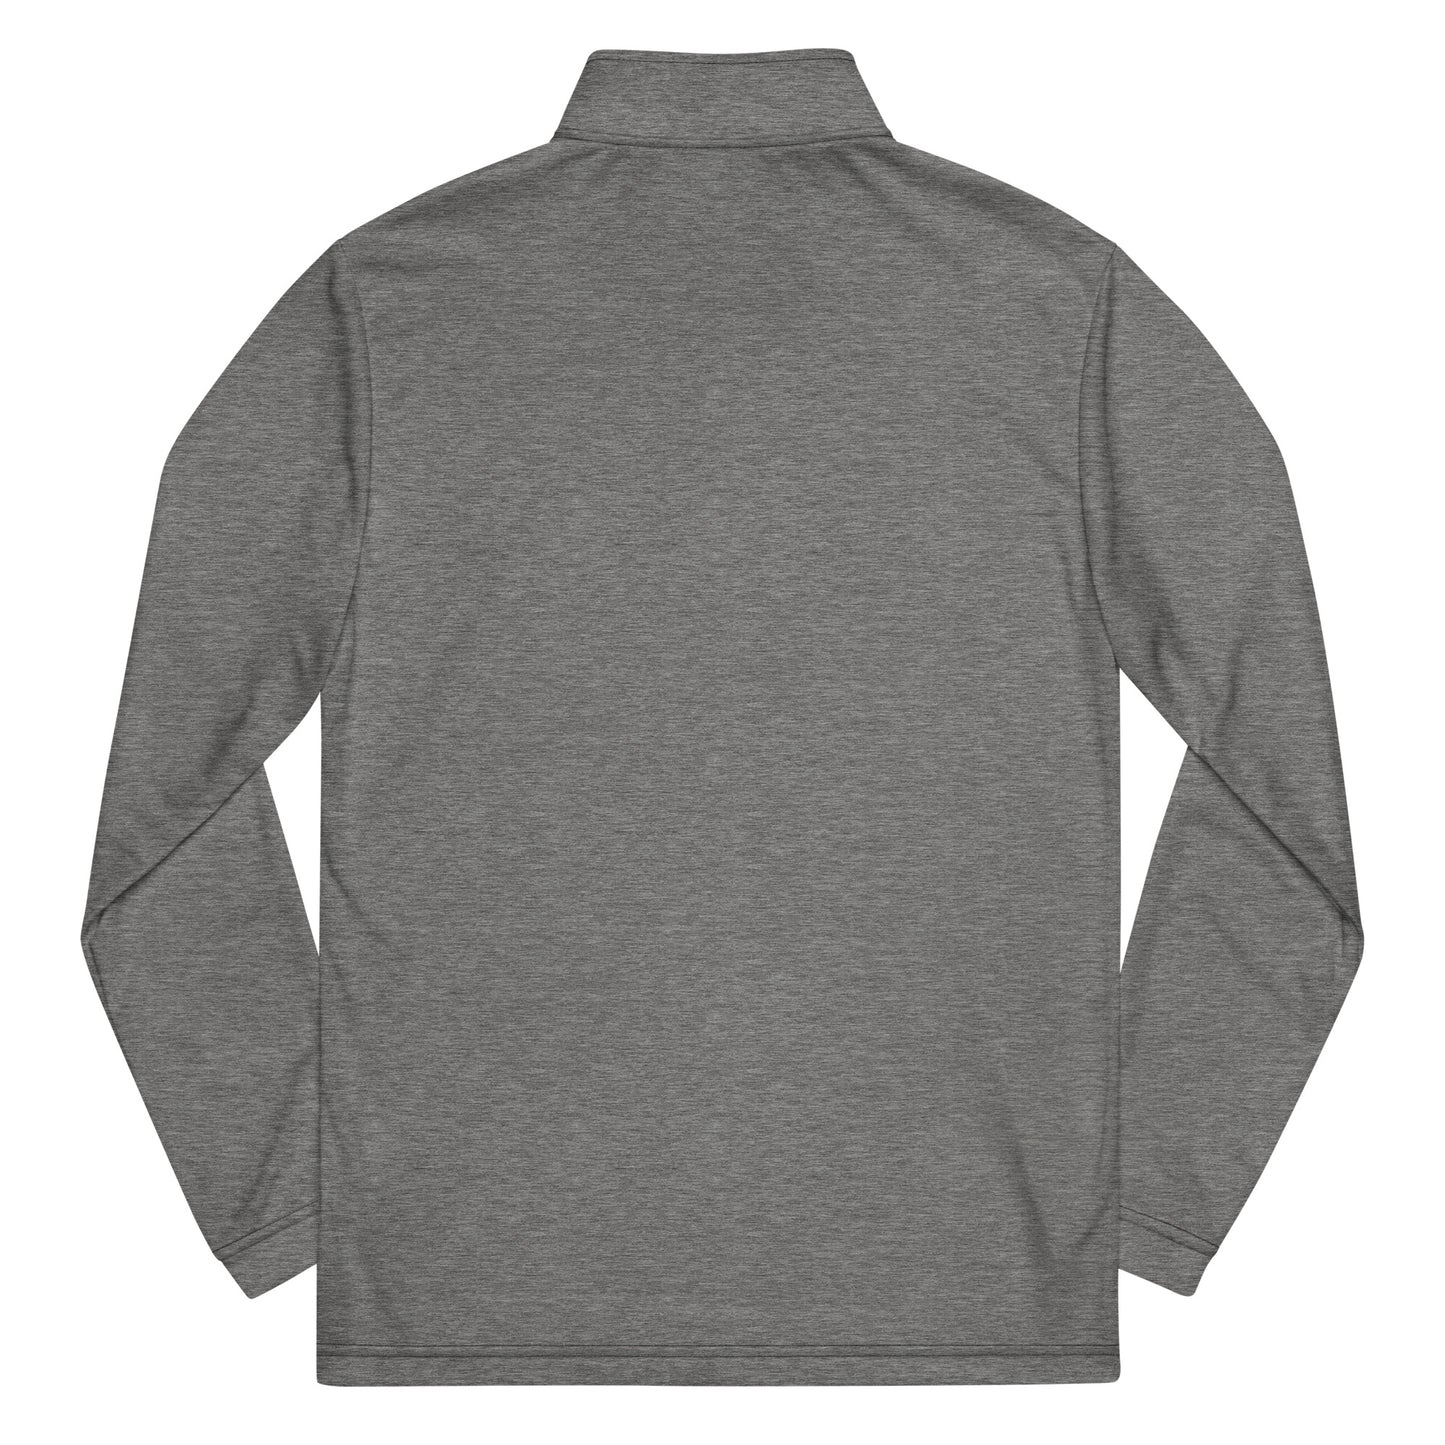 SCIOTO LITTLE IRISH (small Scioto logo)-Quarter zip pullover